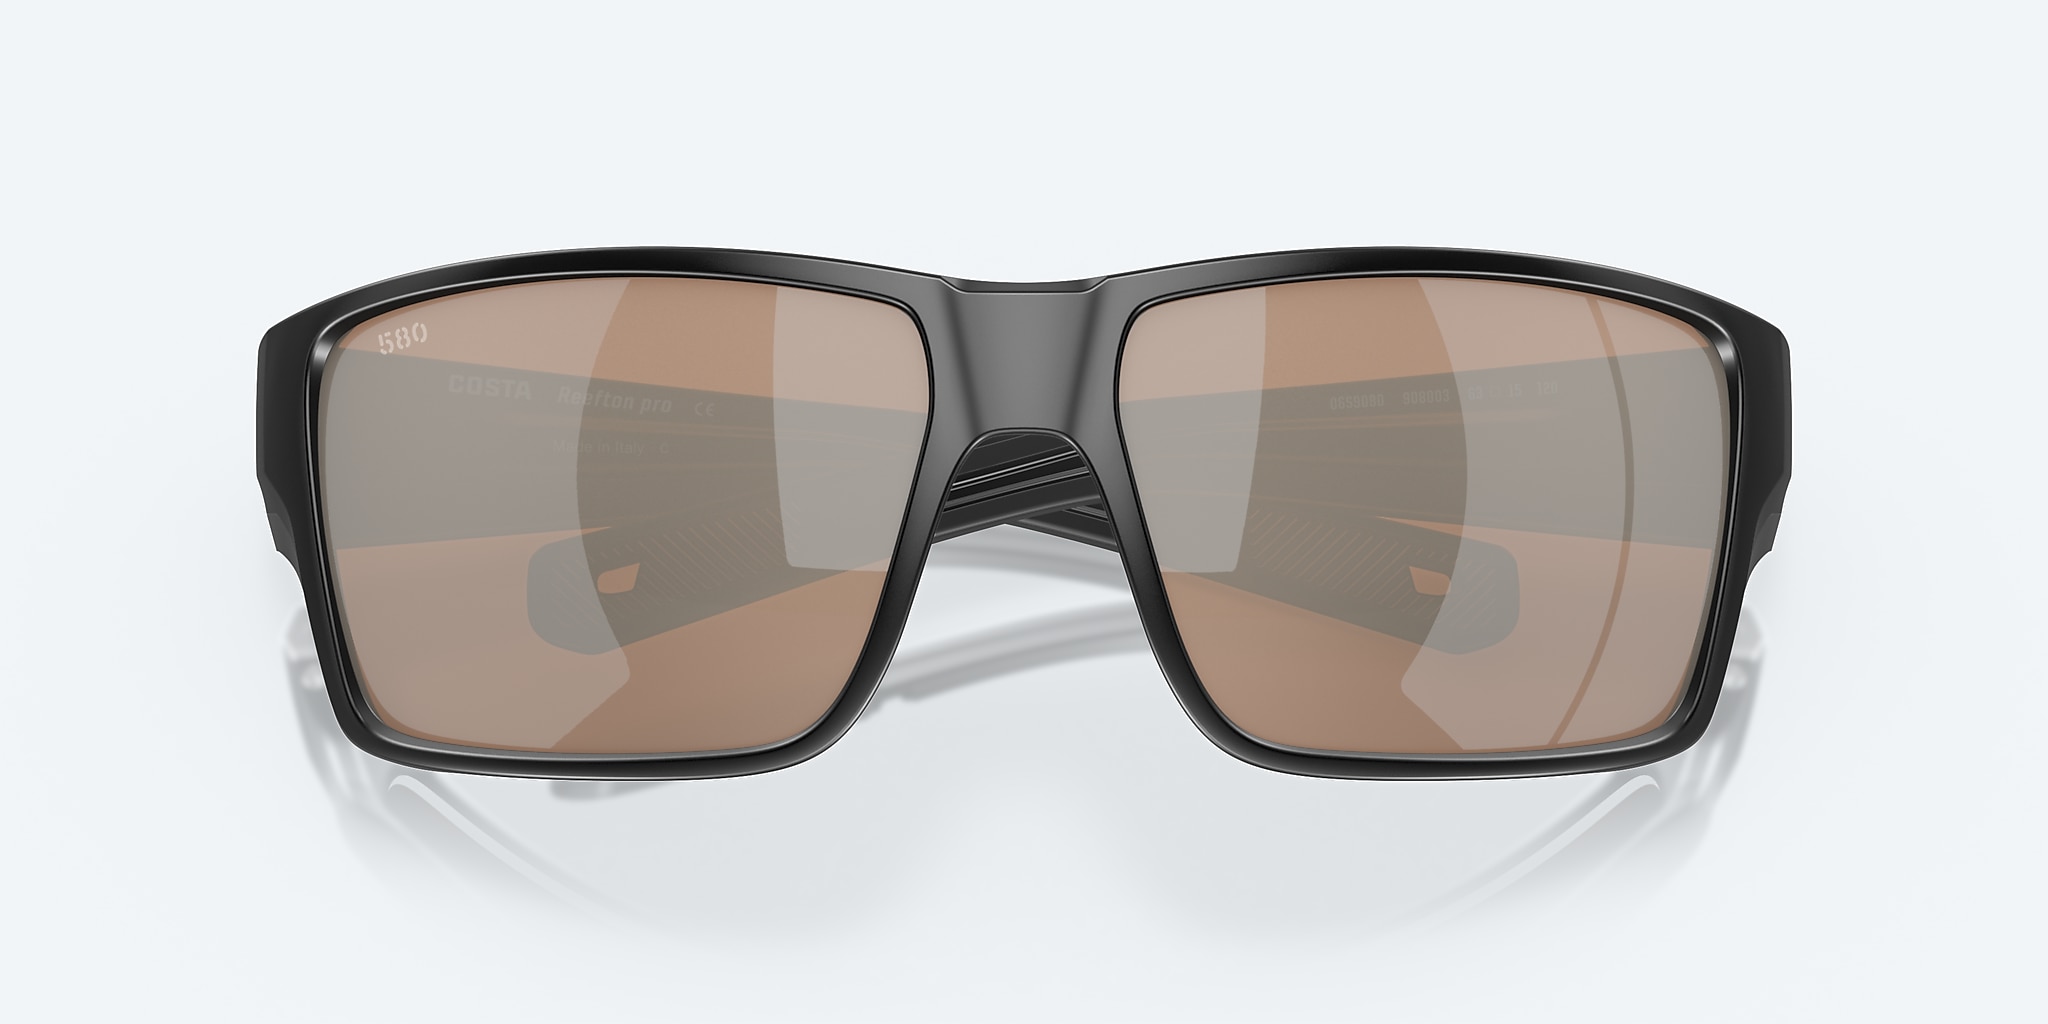 Reefton PRO Polarized Sunglasses in Copper Silver Mirror | Costa Del Mar®